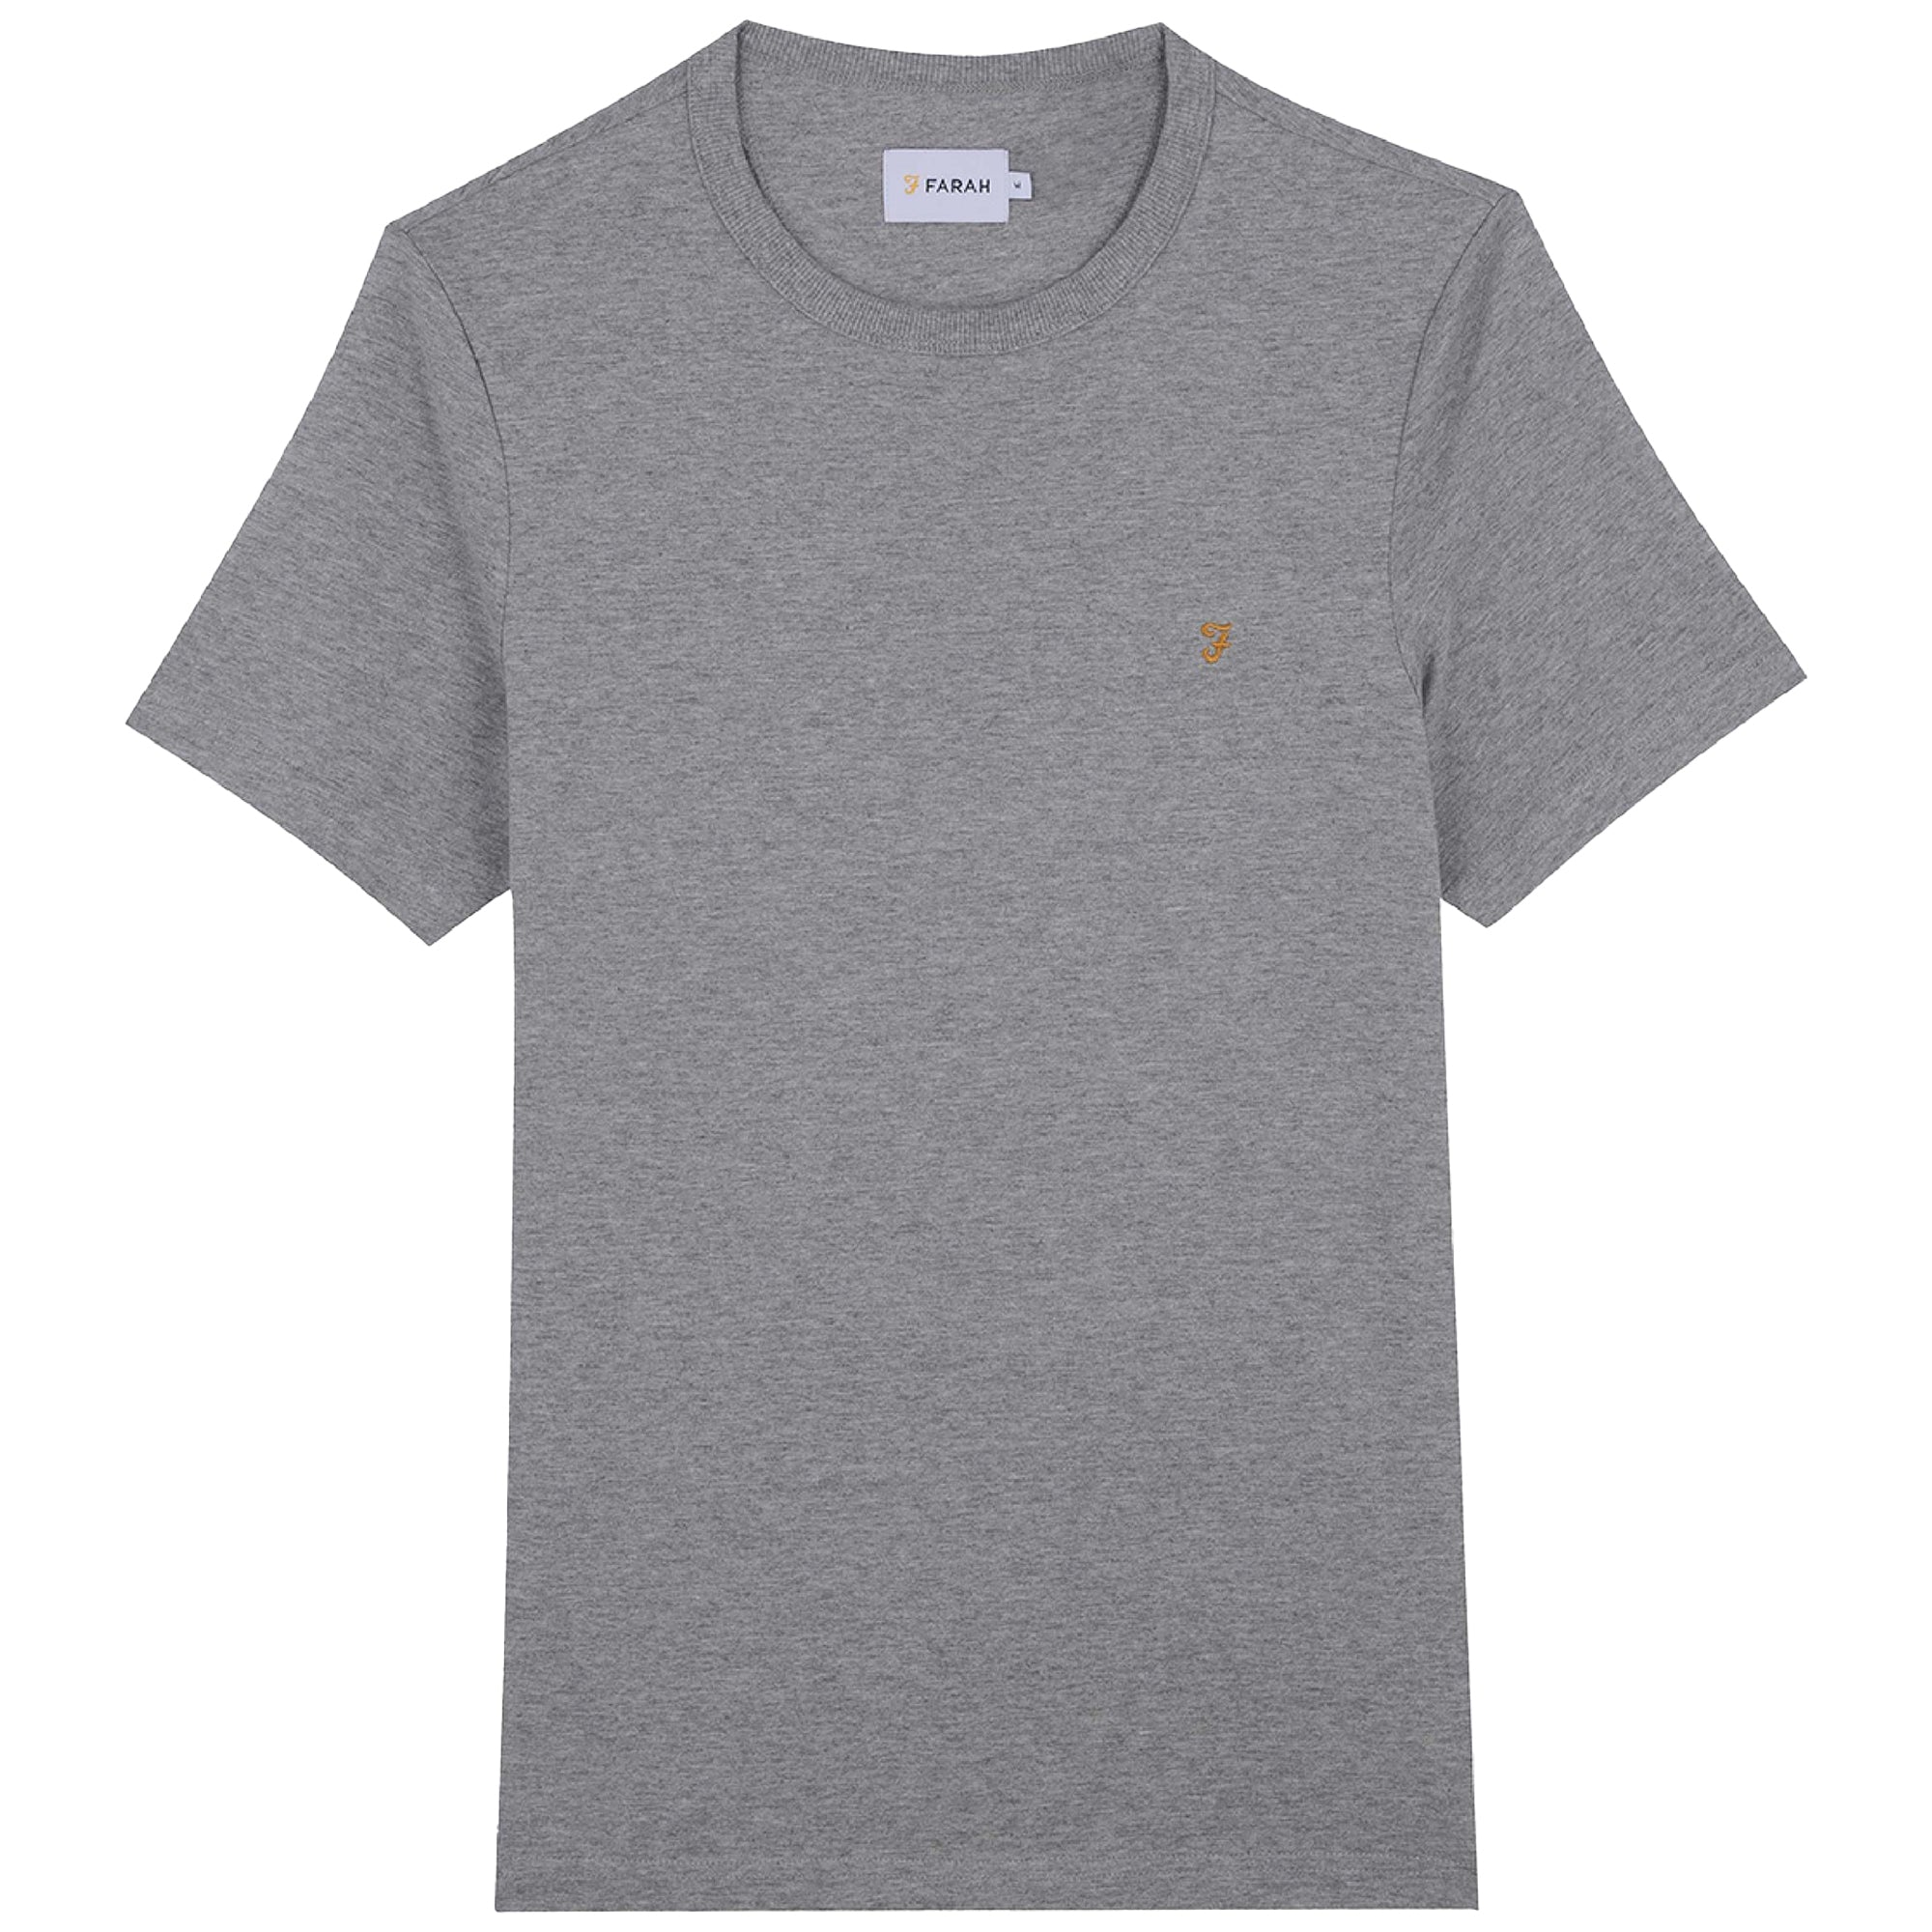 Farah New Danny T-Shirt - Grey Marl